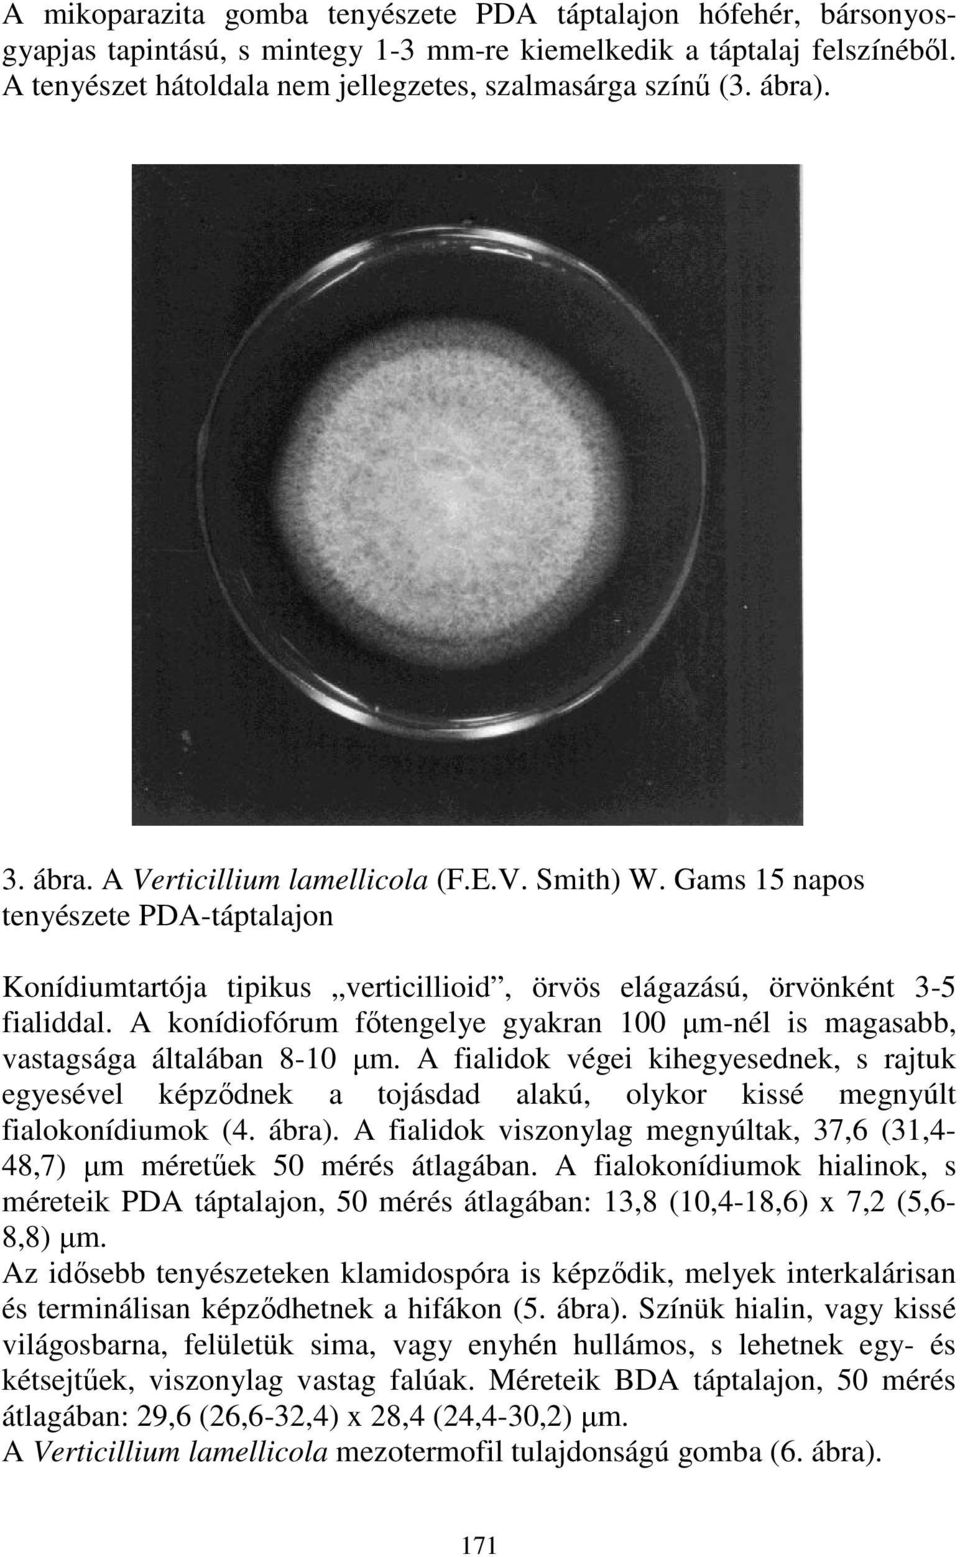 A konídiofórum fıtengelye gyakran 100 µm-nél is magasabb, vastagsága általában 8-10 µm.